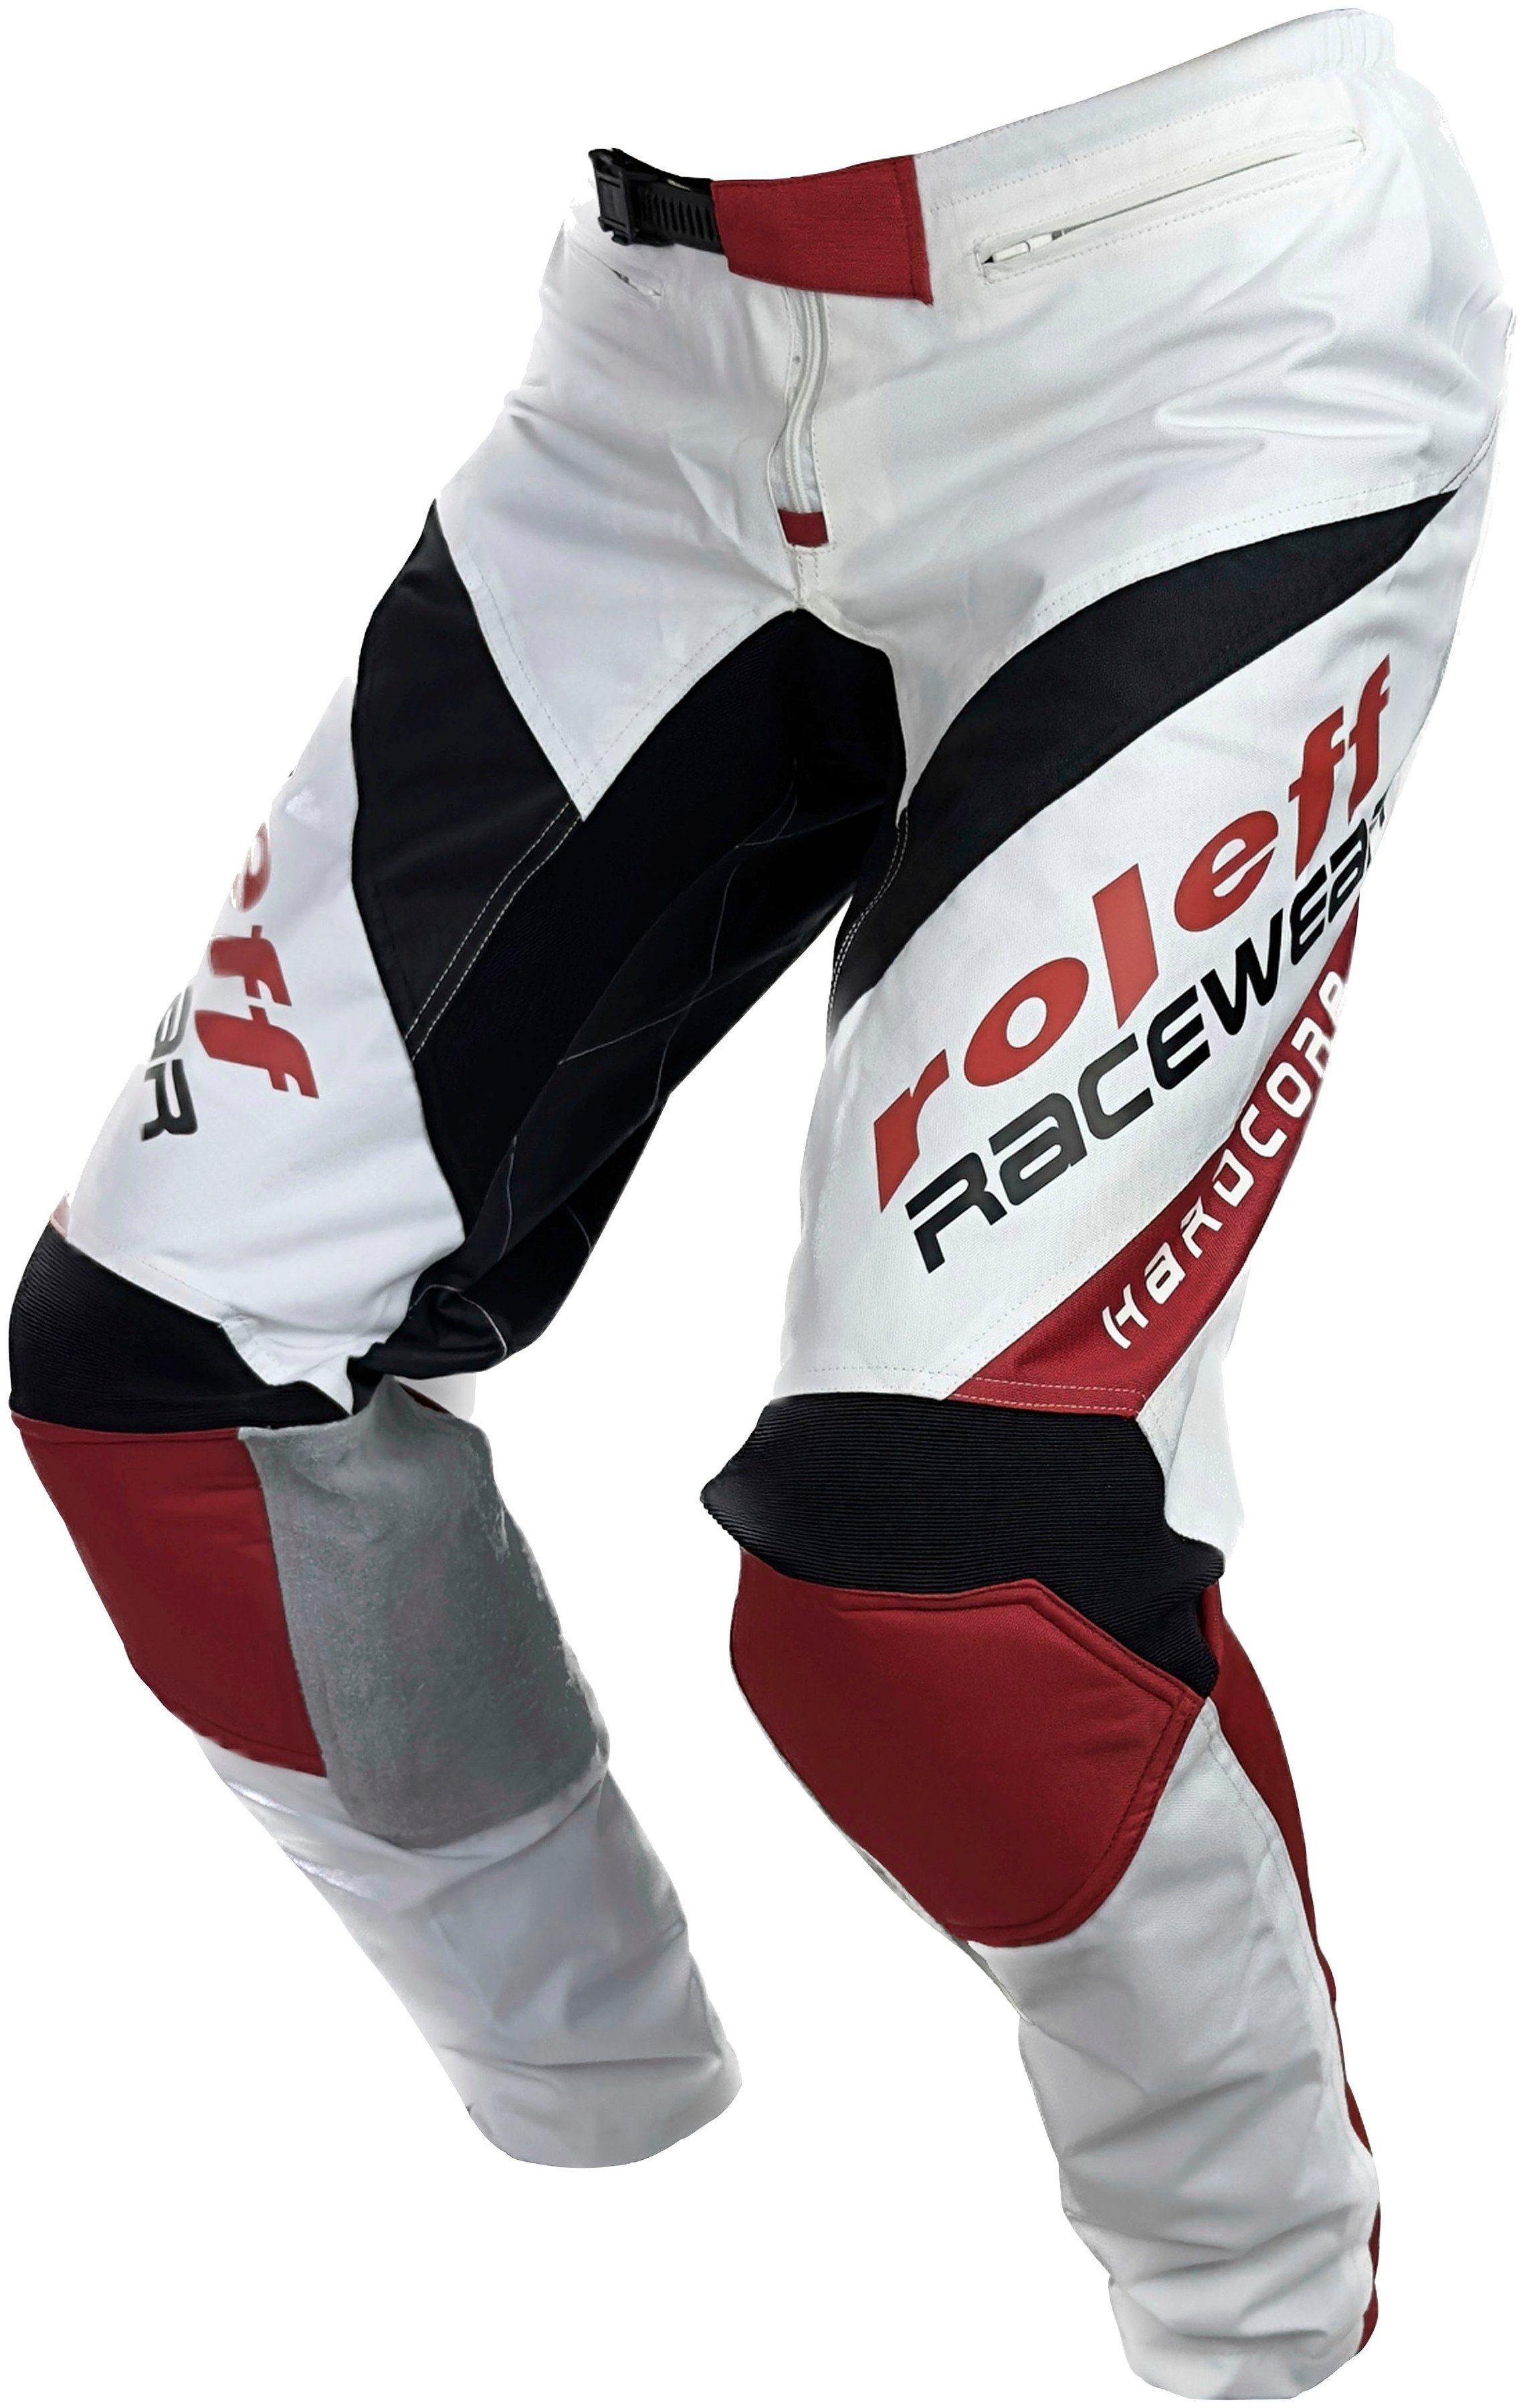 Motorradhose 872 RO Motocross roleff Lederverstärkungen und Stretcheinlagen mit